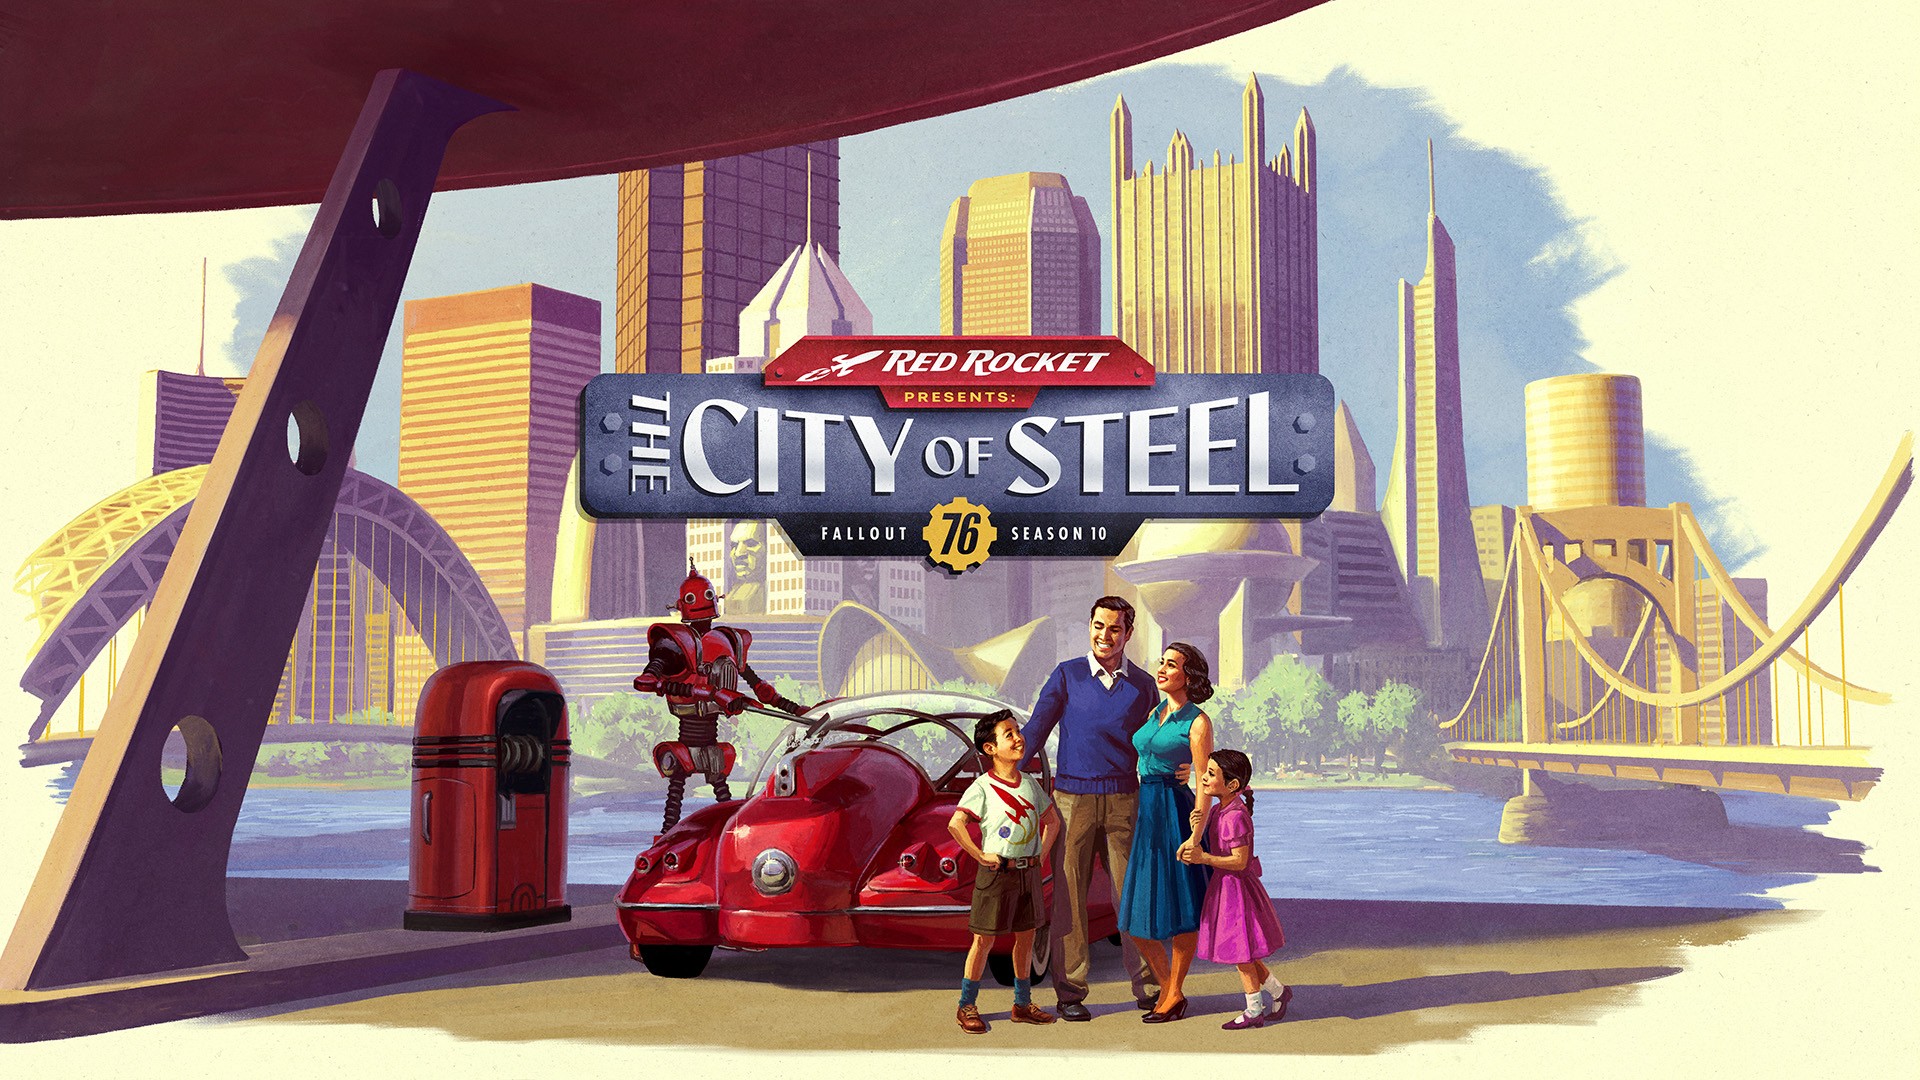 Fallout 76 zaprasza do Miasta Stali w ramach 10 sezonu